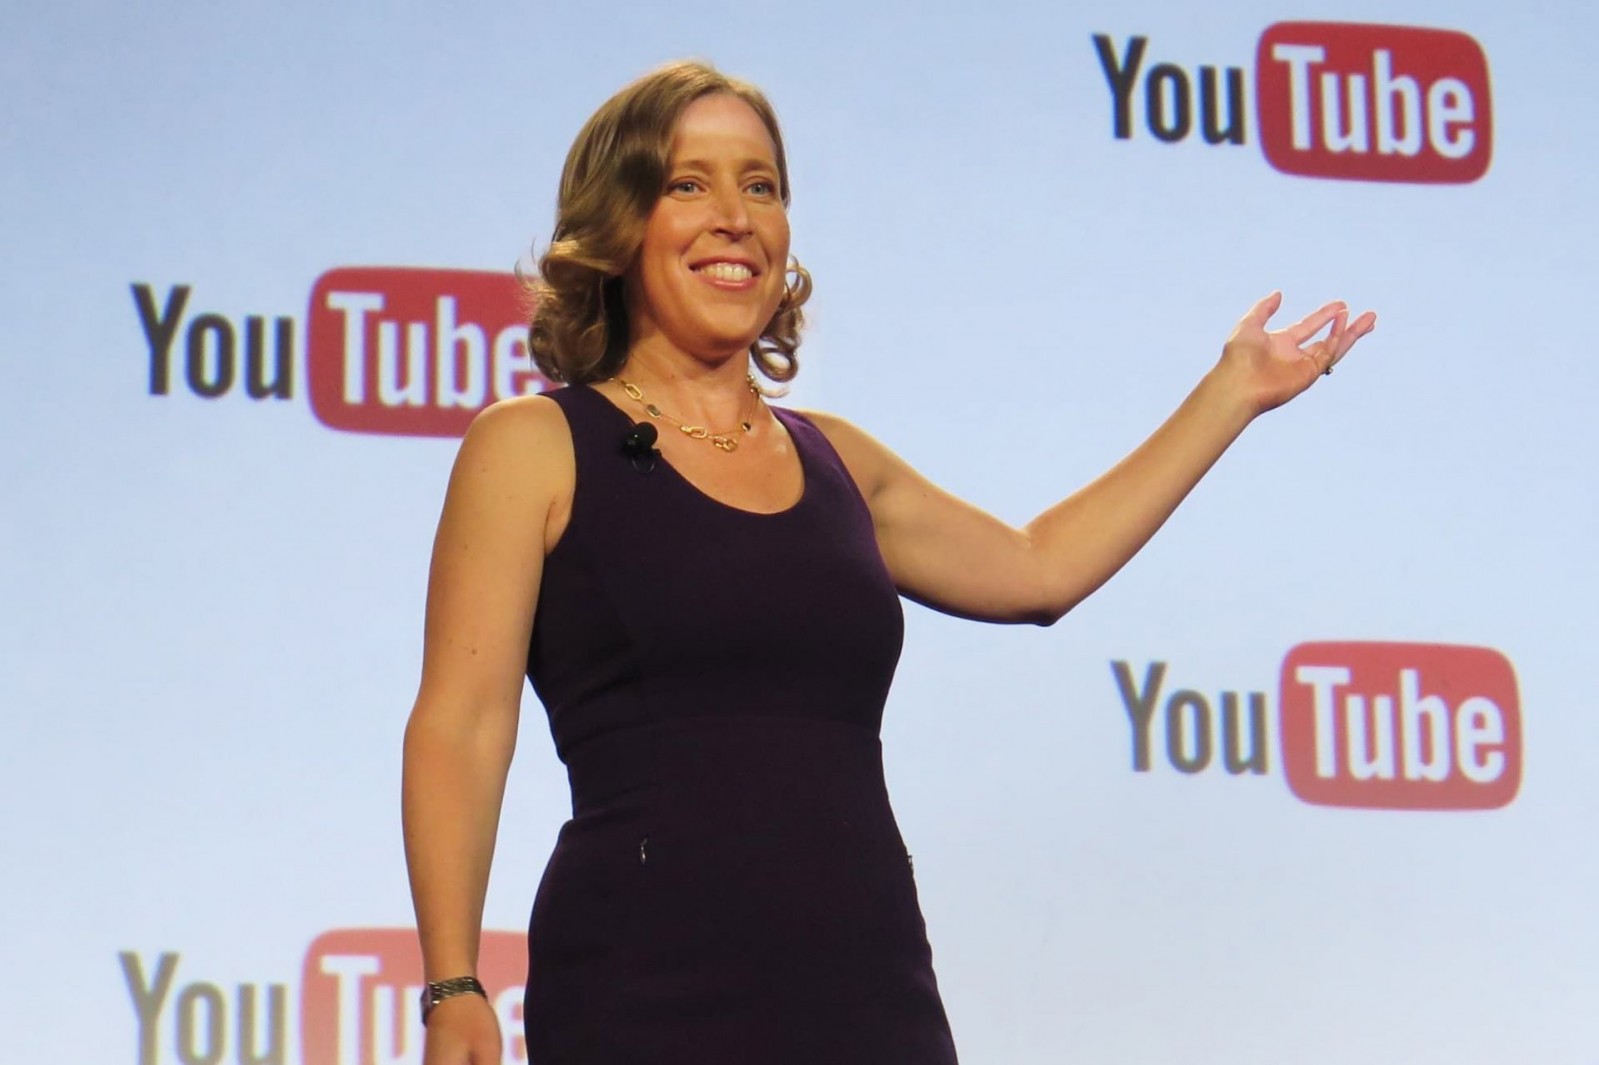 Bà chỉ từ chức CEO Youtube và chuyển sang vai trò cố vấn ở công ty mẹ Alphabet